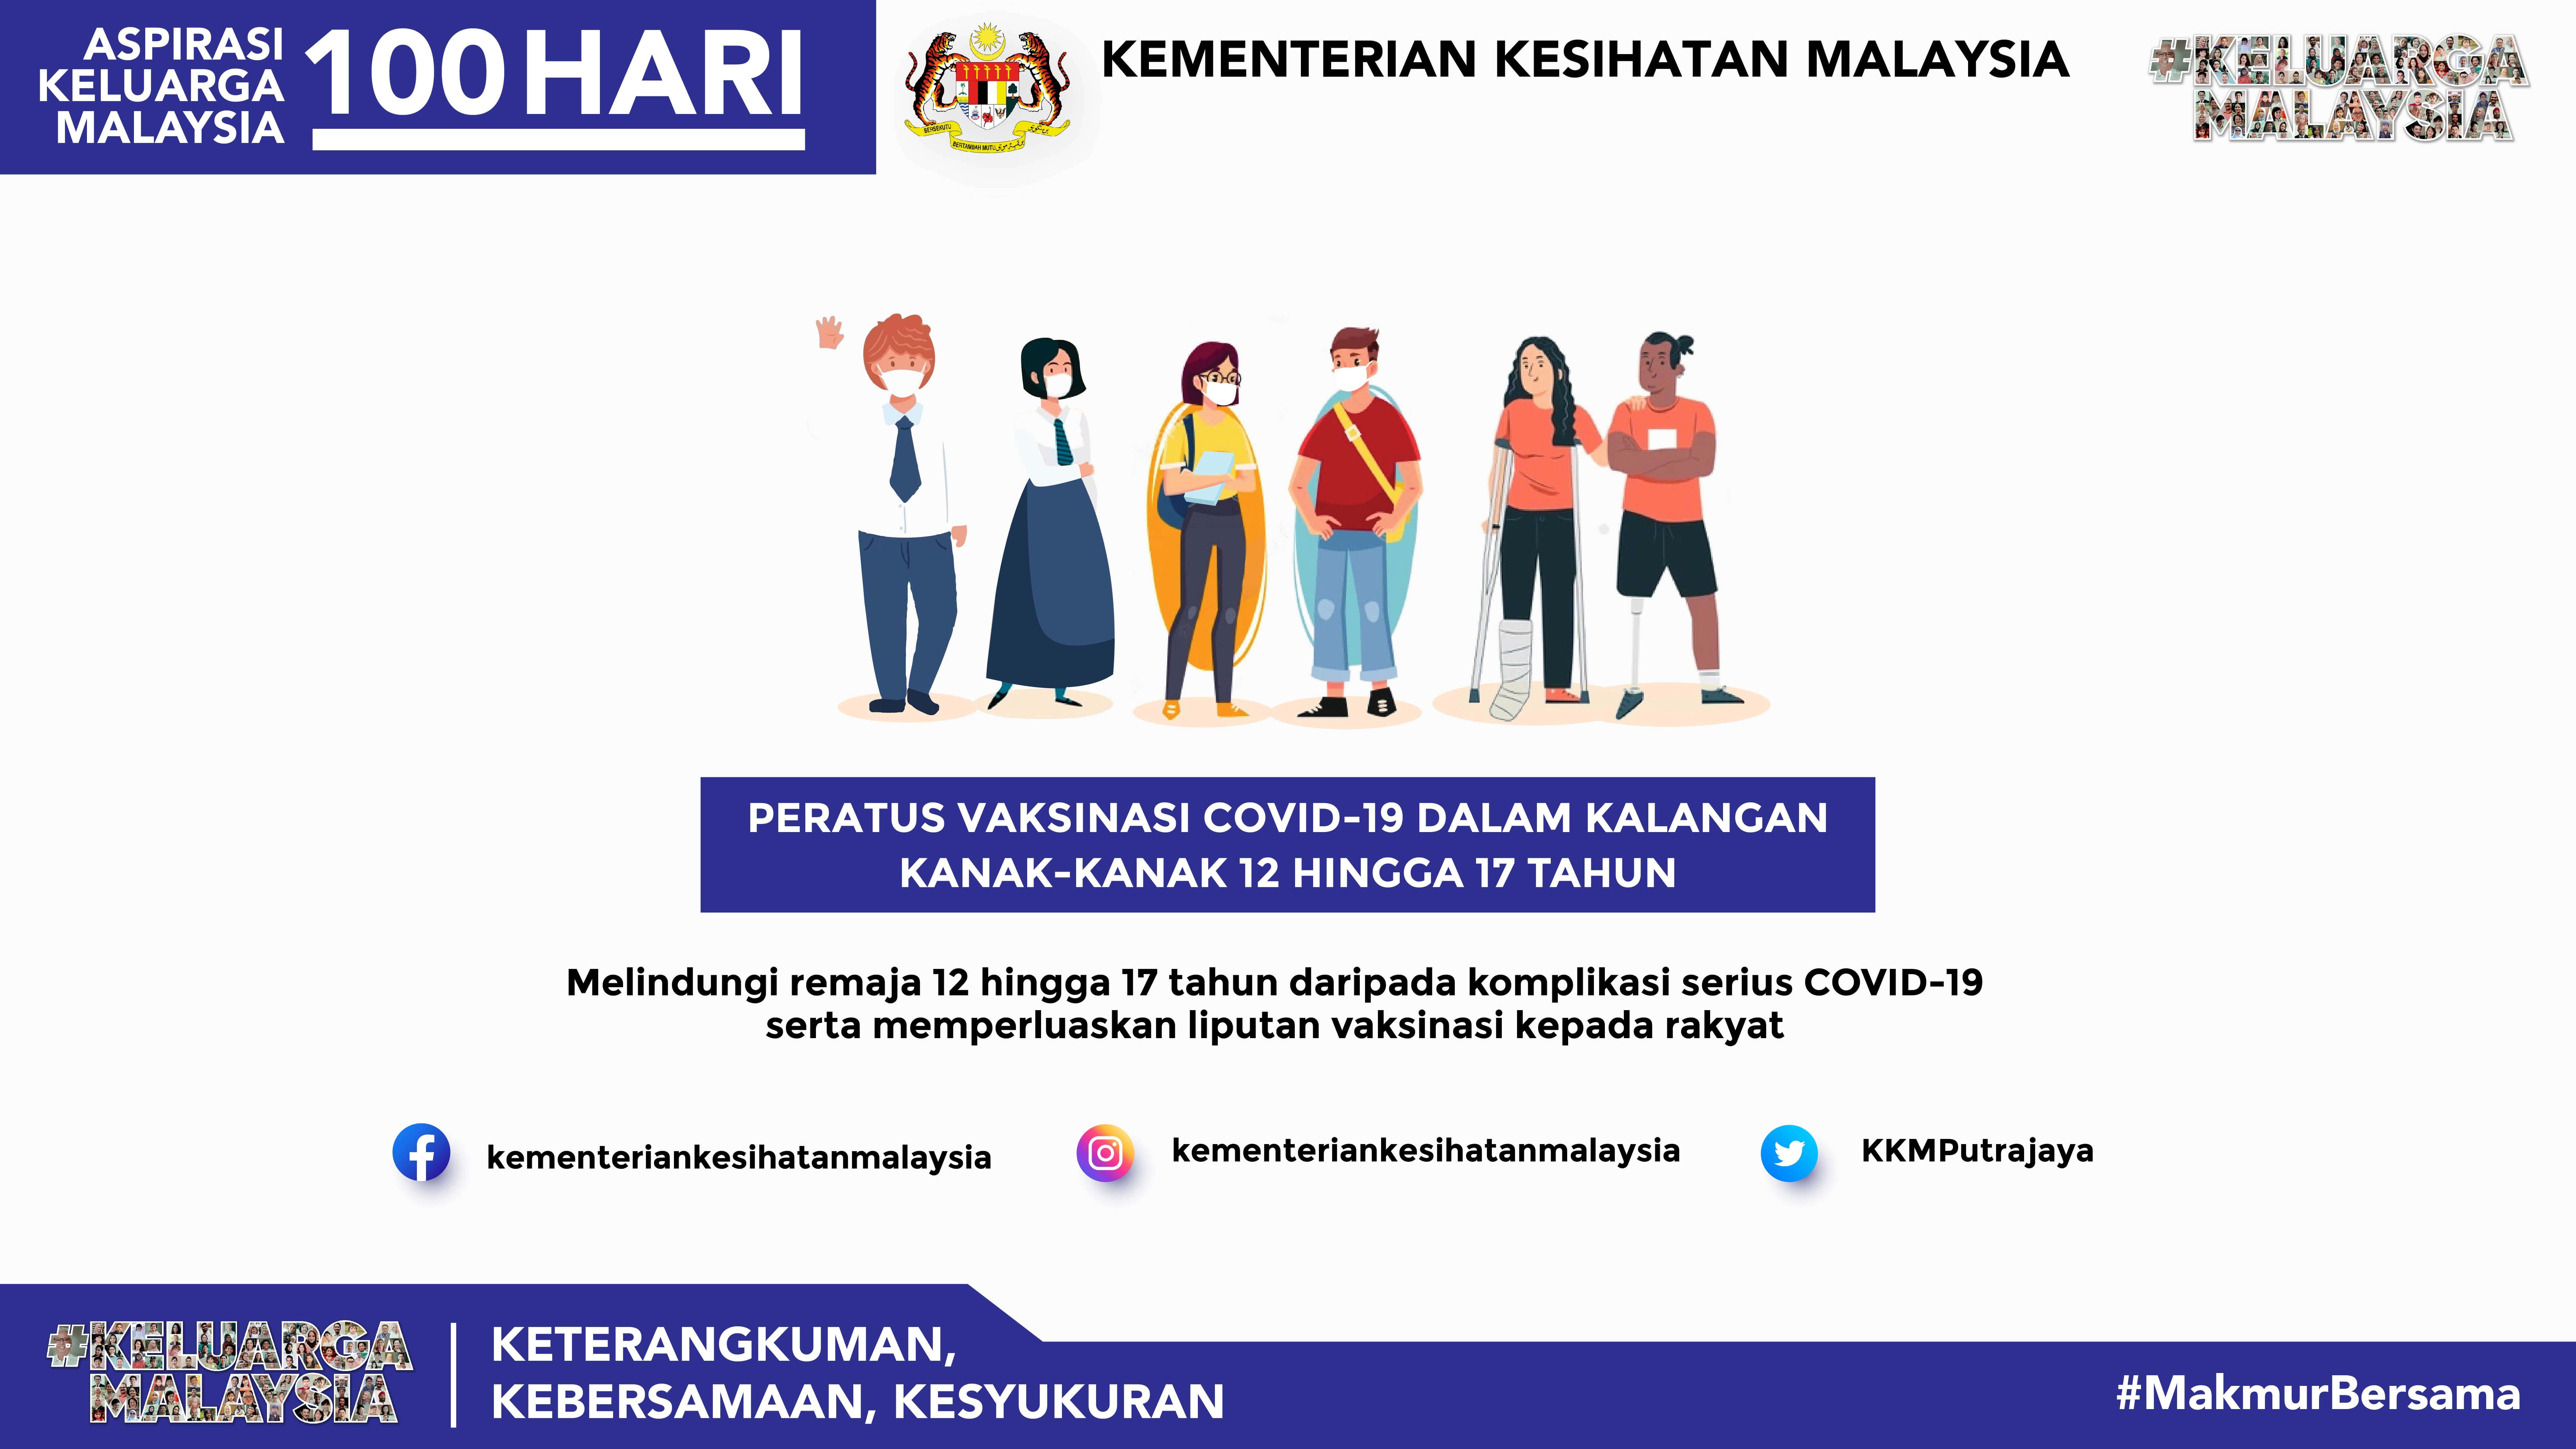 Kementerian kesihatan malaysia